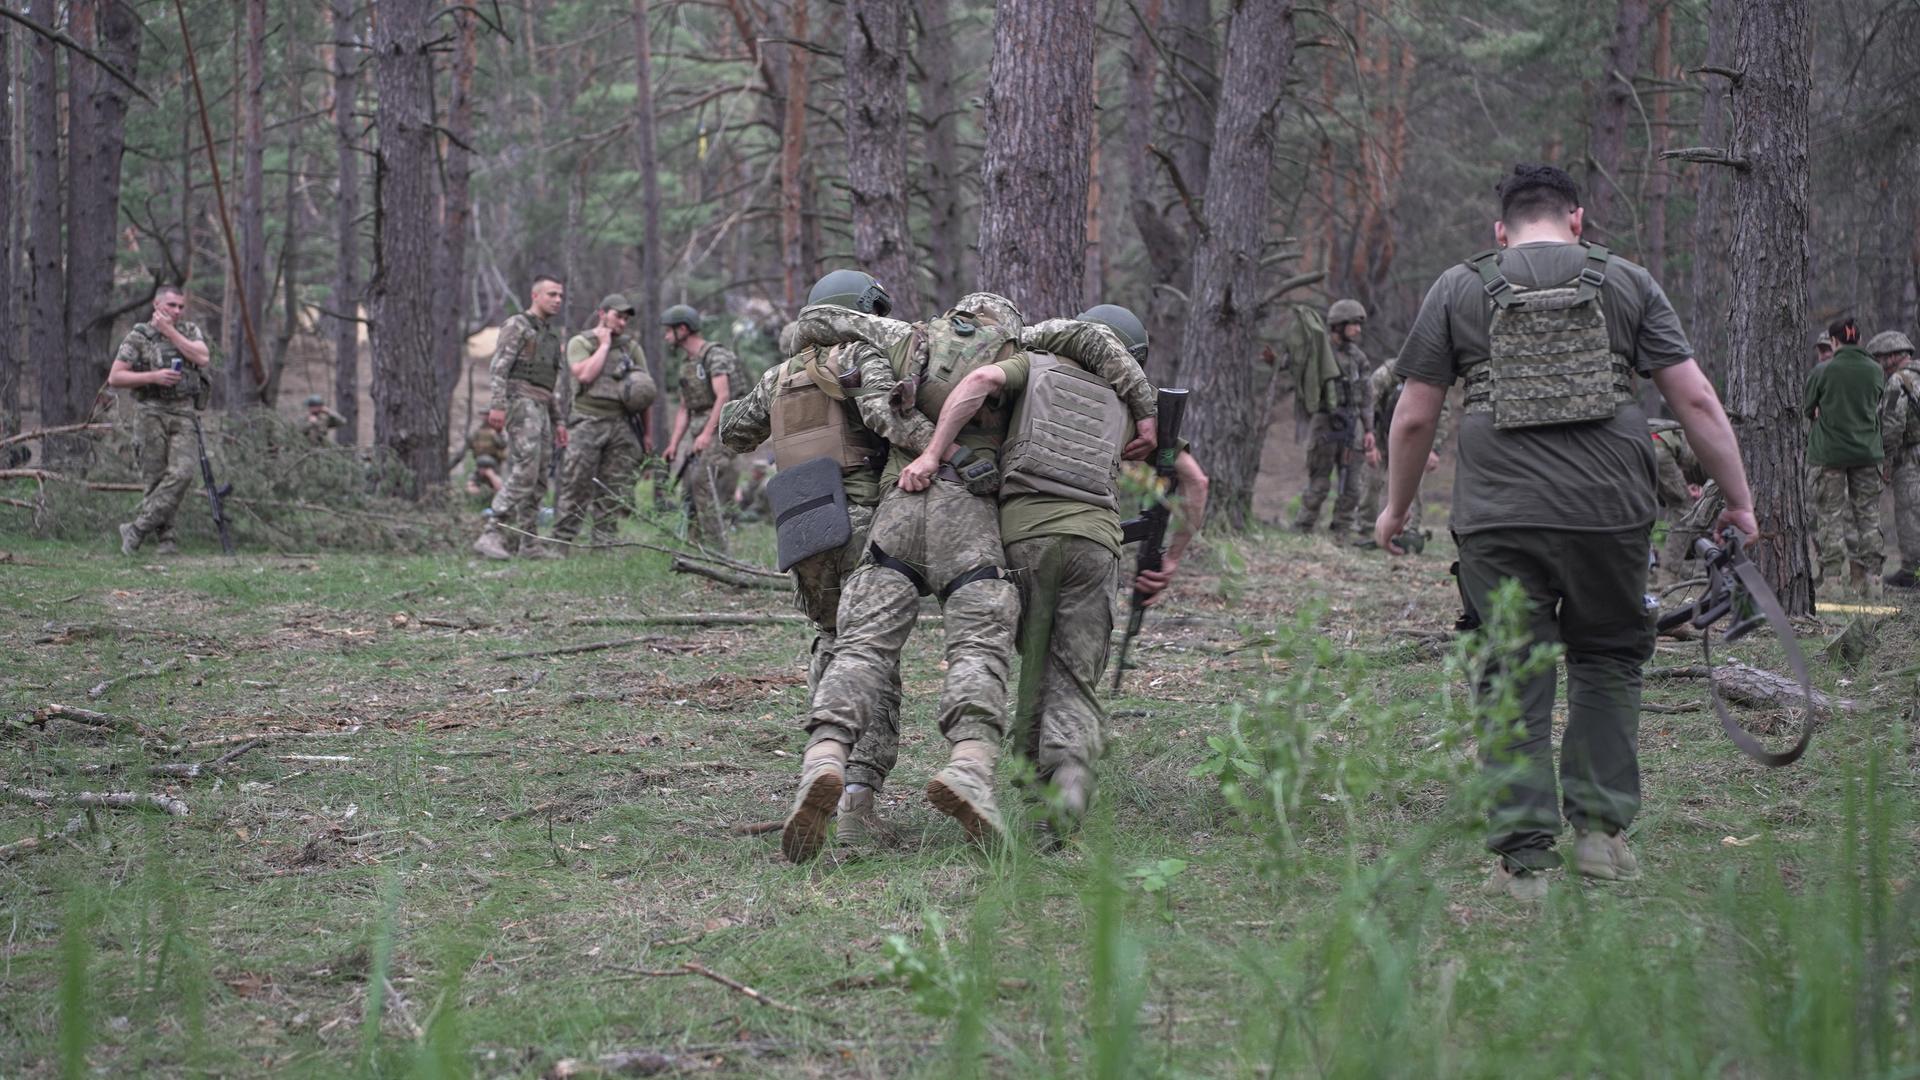 Ukrainische Soldaten trainieren in einem Waldstück einen Rettungseinsatz. Ein Soldat wird von seinen Kameraden zwischen den Schultern weggetragen.